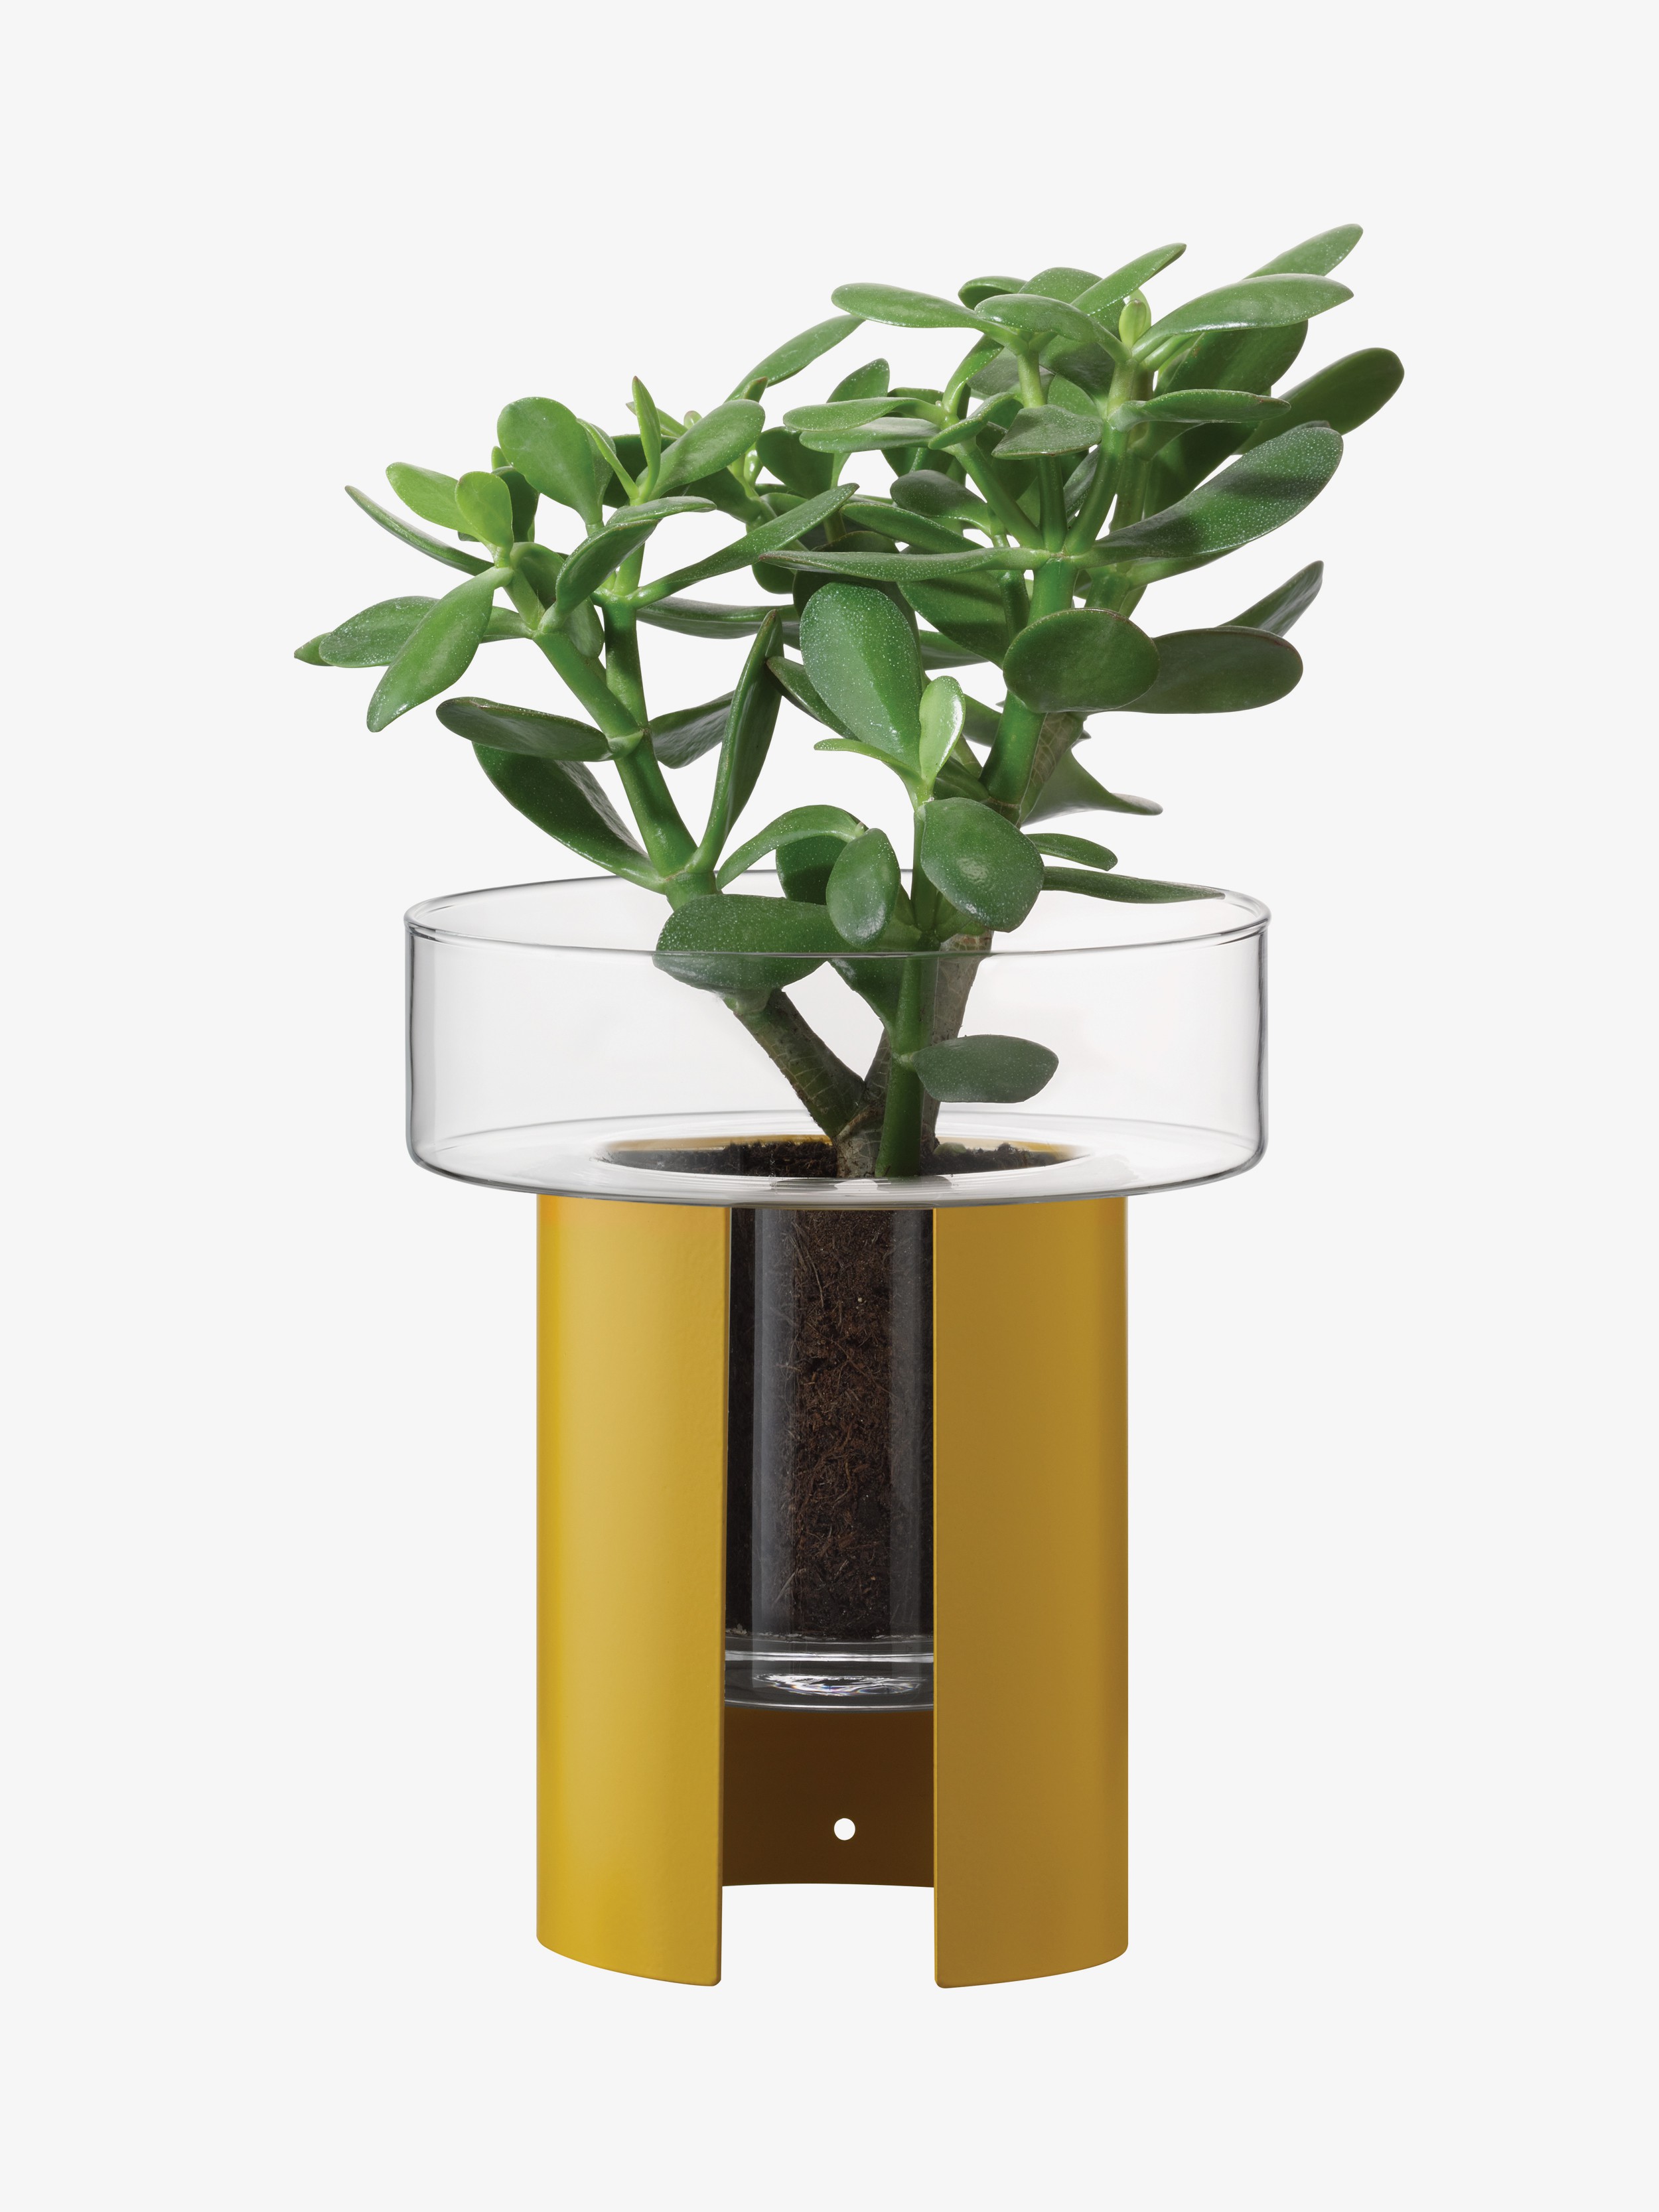 Terrazza kvetináč, v. 22 cm, Ø19 cm, číra/horčicovo žltá - LSA international